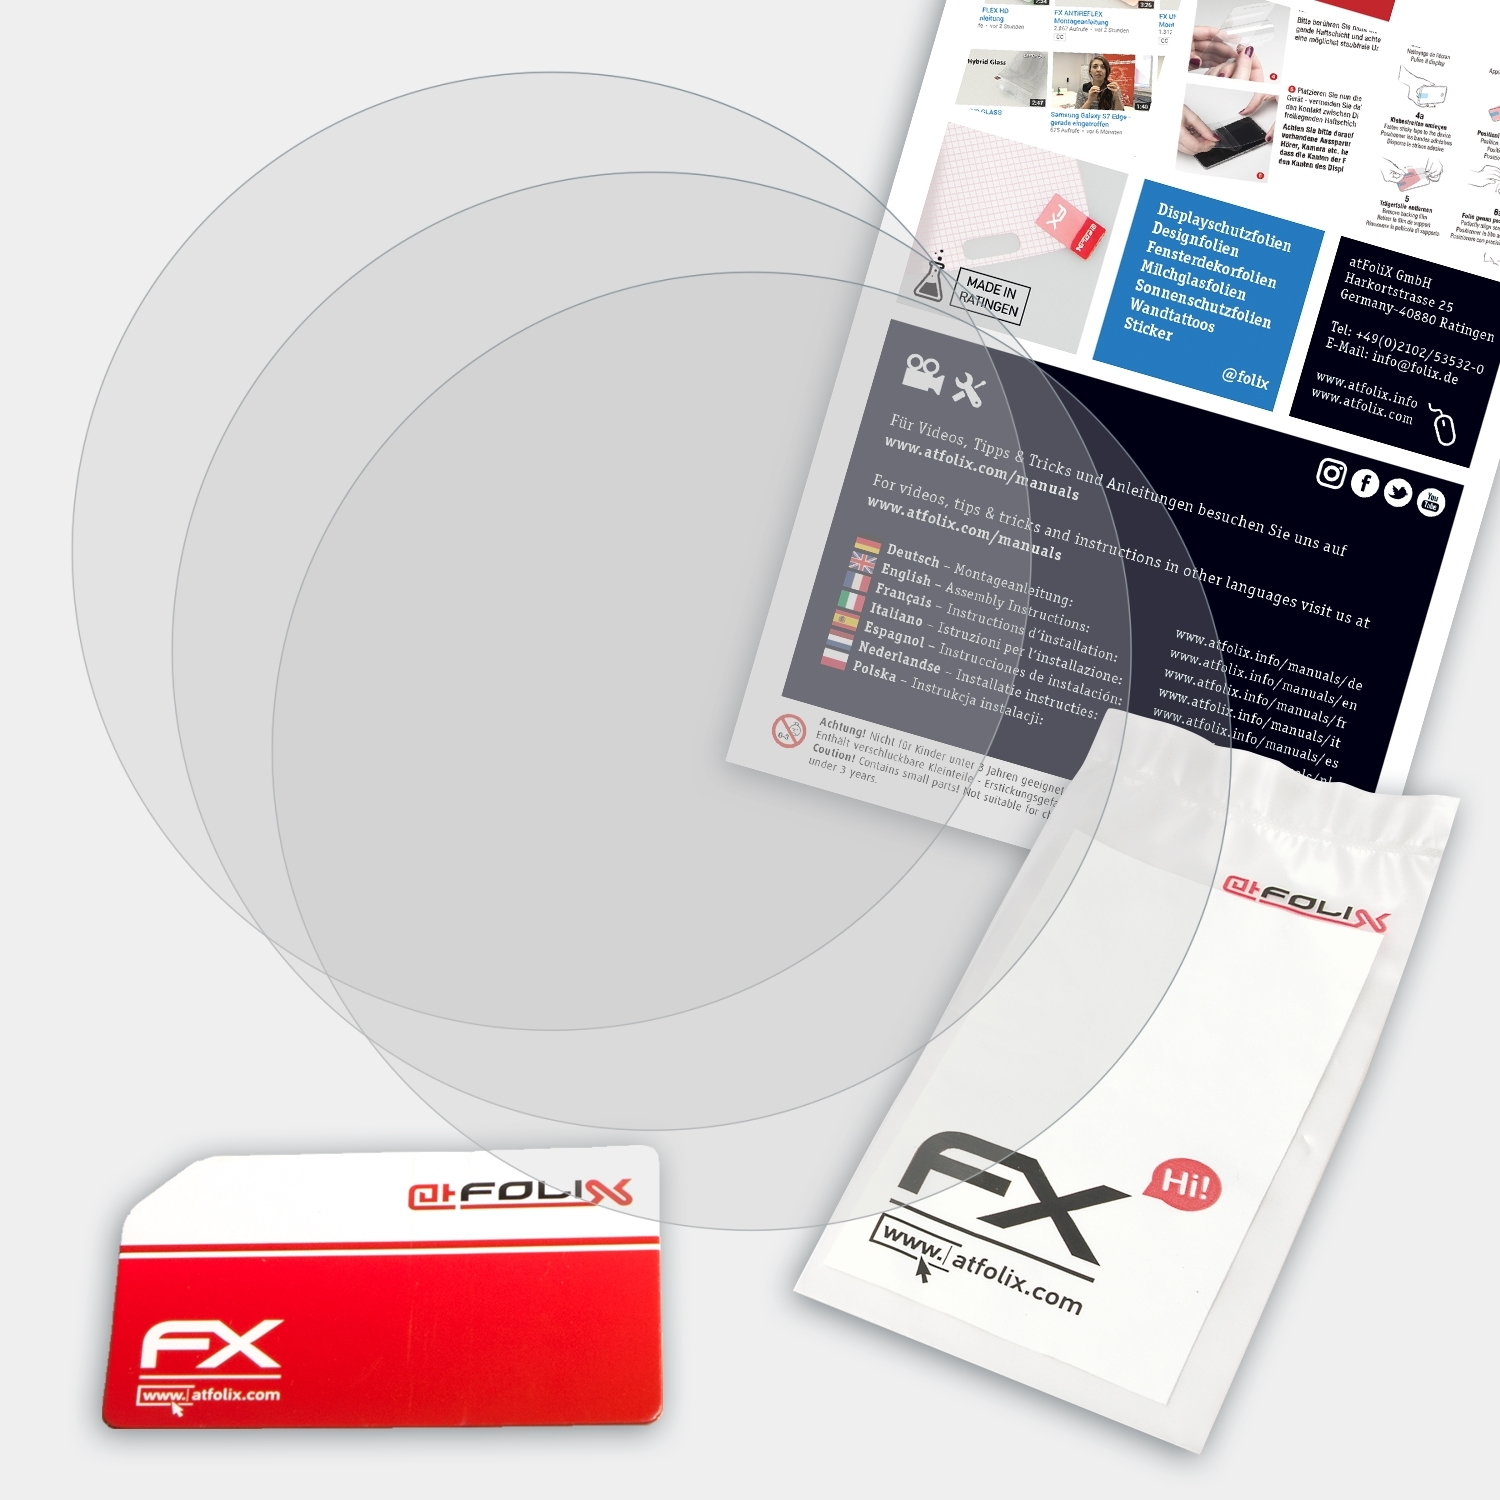 ATFOLIX 3x FX-Antireflex Displayschutz(für Garmin mm)) Delta (42 S D2